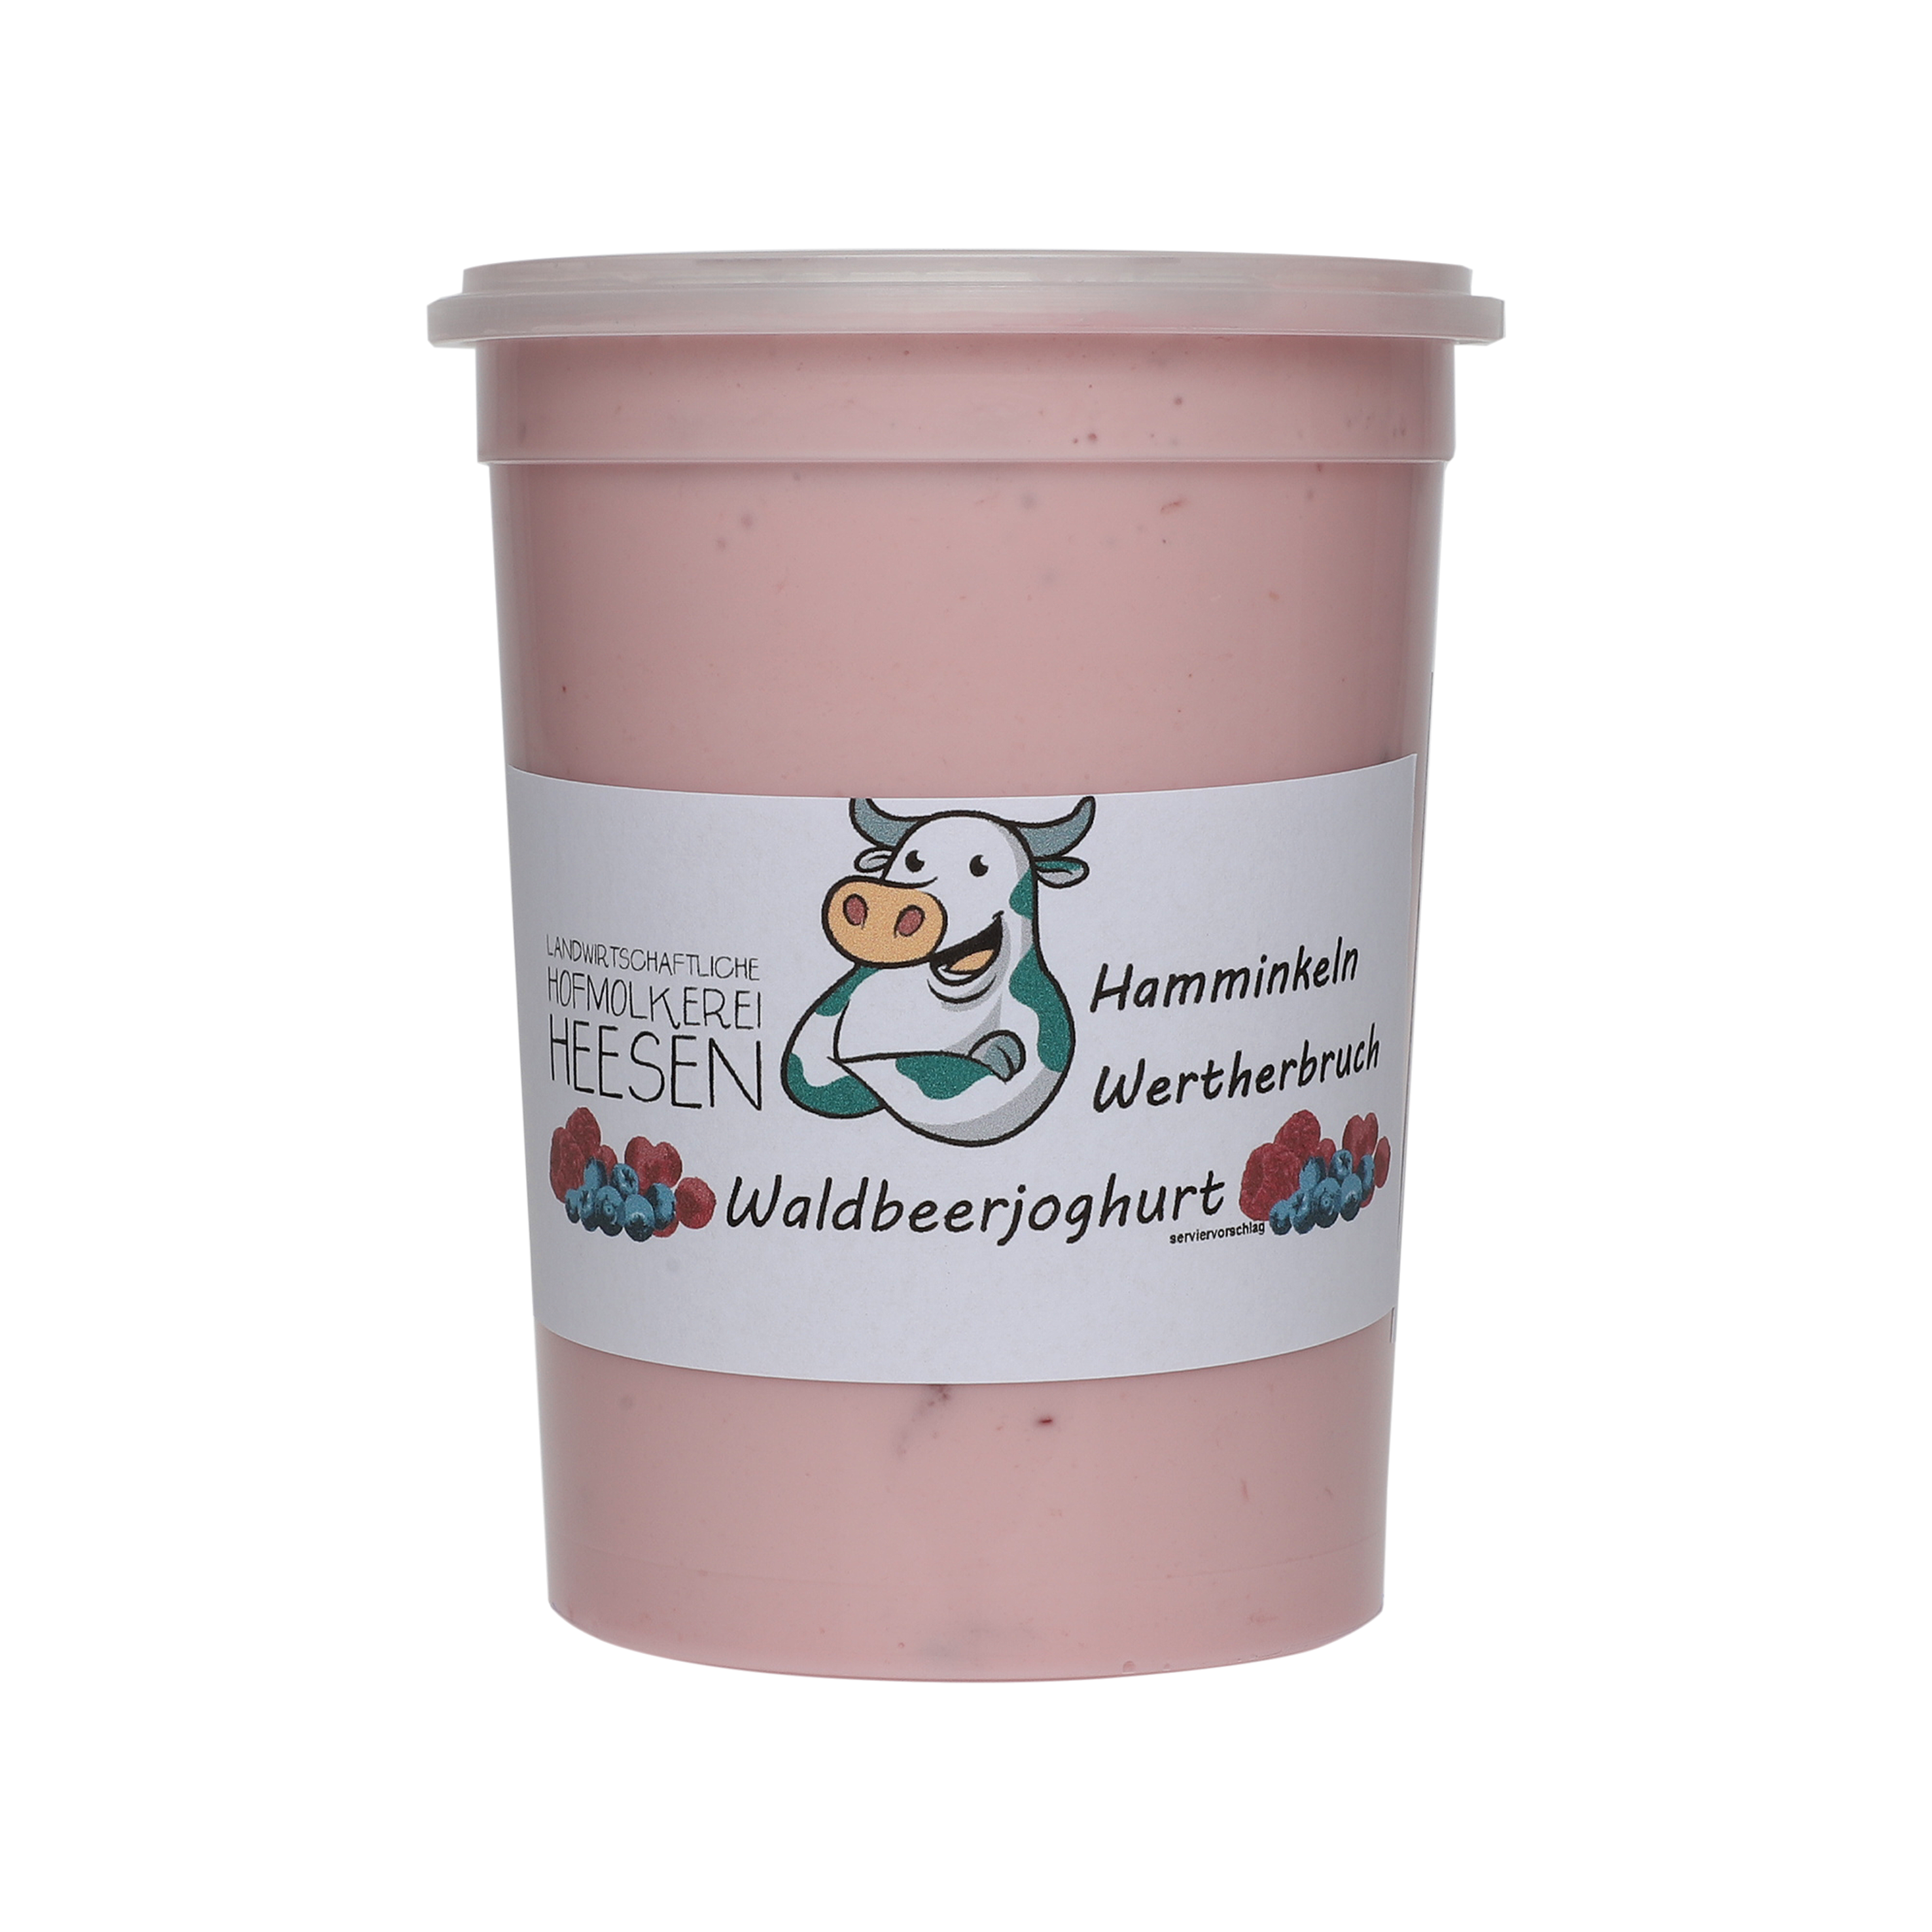 24_Milchhof Heesen 500g Waldbeer Joghurt neu